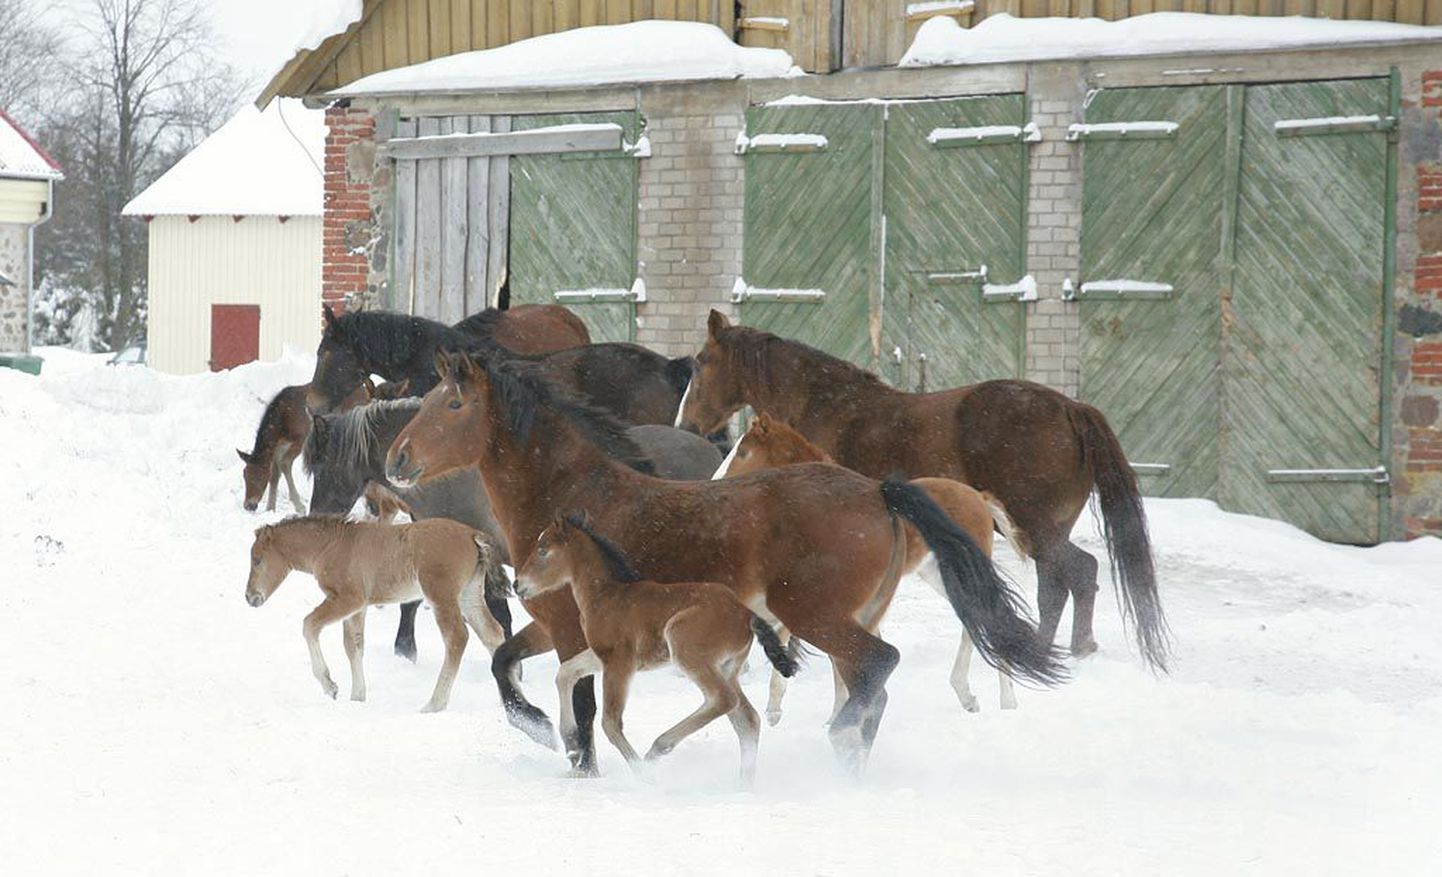 Tori hobusekasvandus on endiselt üks Eesti hobusekasvatuse keskustest.